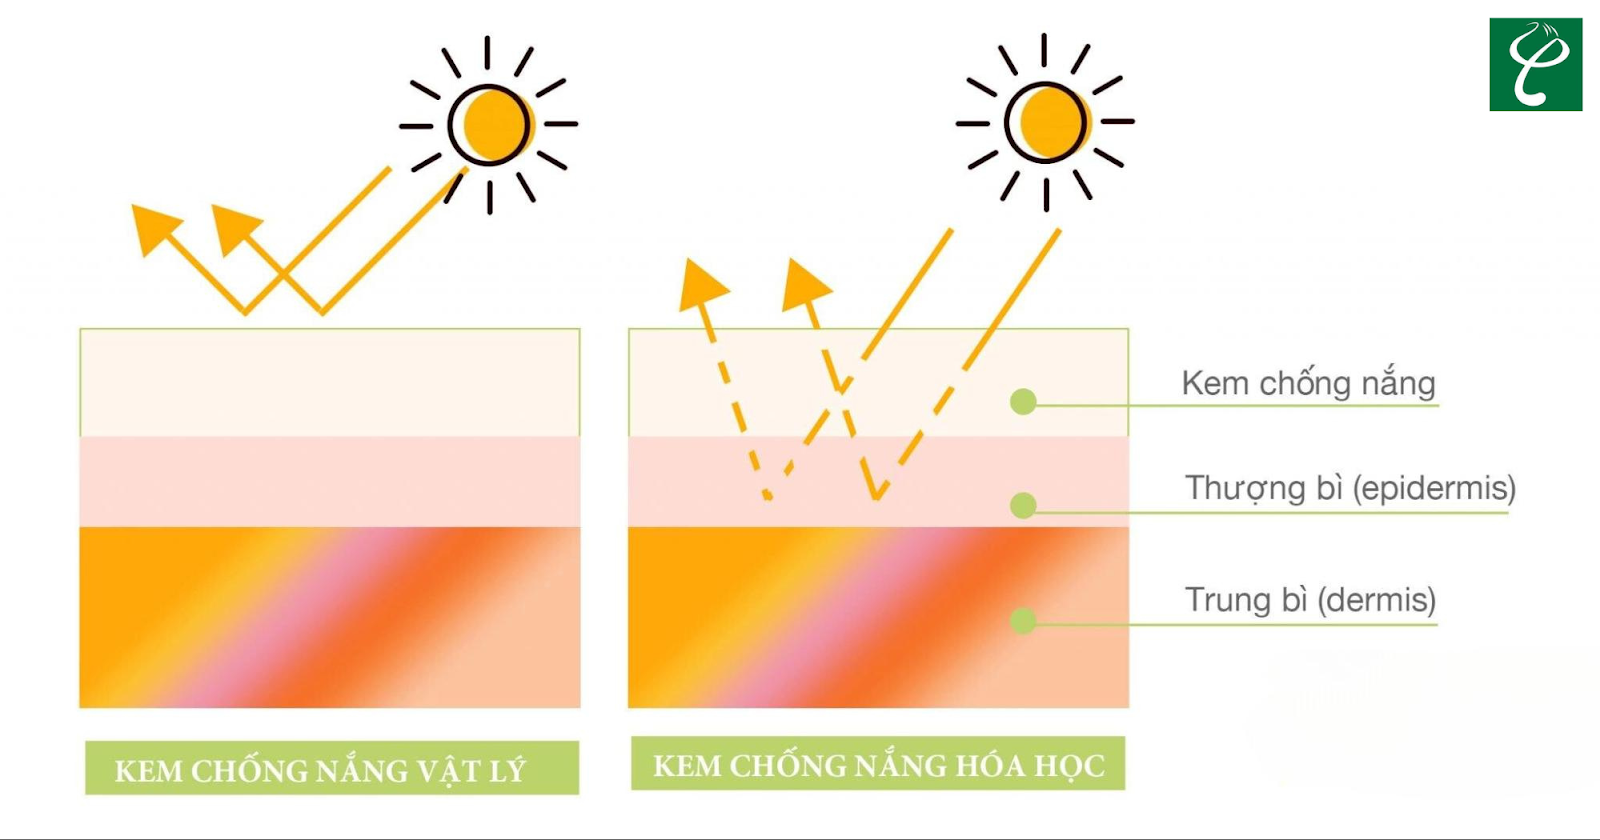 Cơ chế hoạt động khác nhau của kem chống nắng hóa học và kem chống nắng vật lý